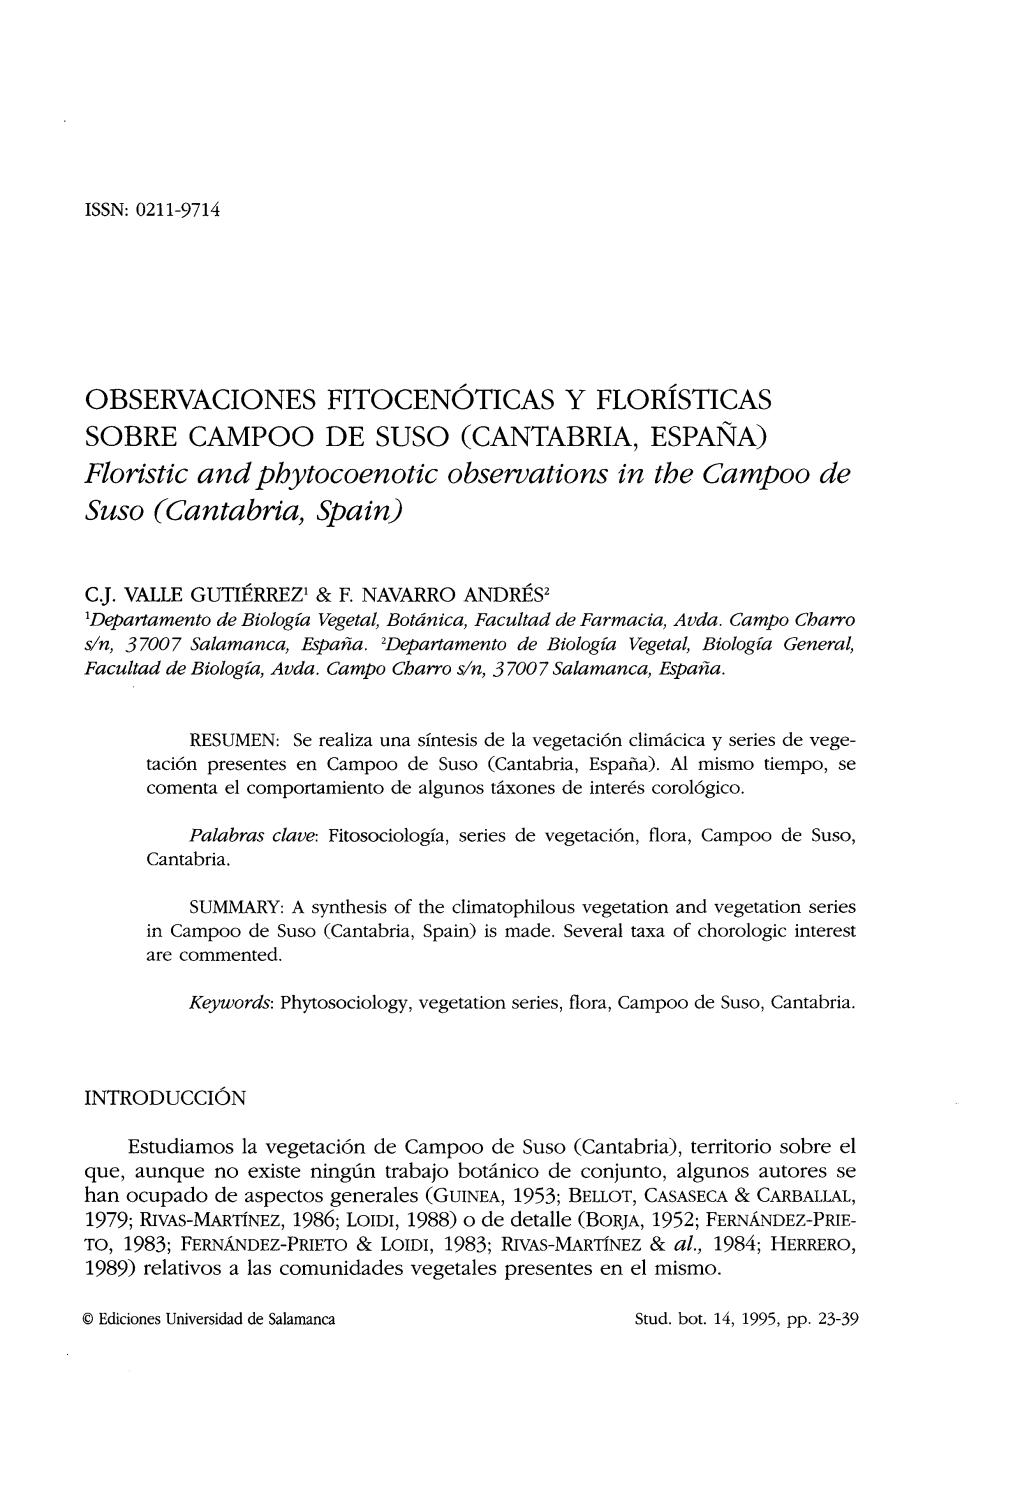 OBSERVACIONES FITOCENÓTICAS Y FLORÍSTICAS SOBRE CAMPOO DE SUSO (CANTABRIA, ESPAÑA) Floristic and Phytocoenotic Observations in the Campoo De Suso (Cantabria, Spain)